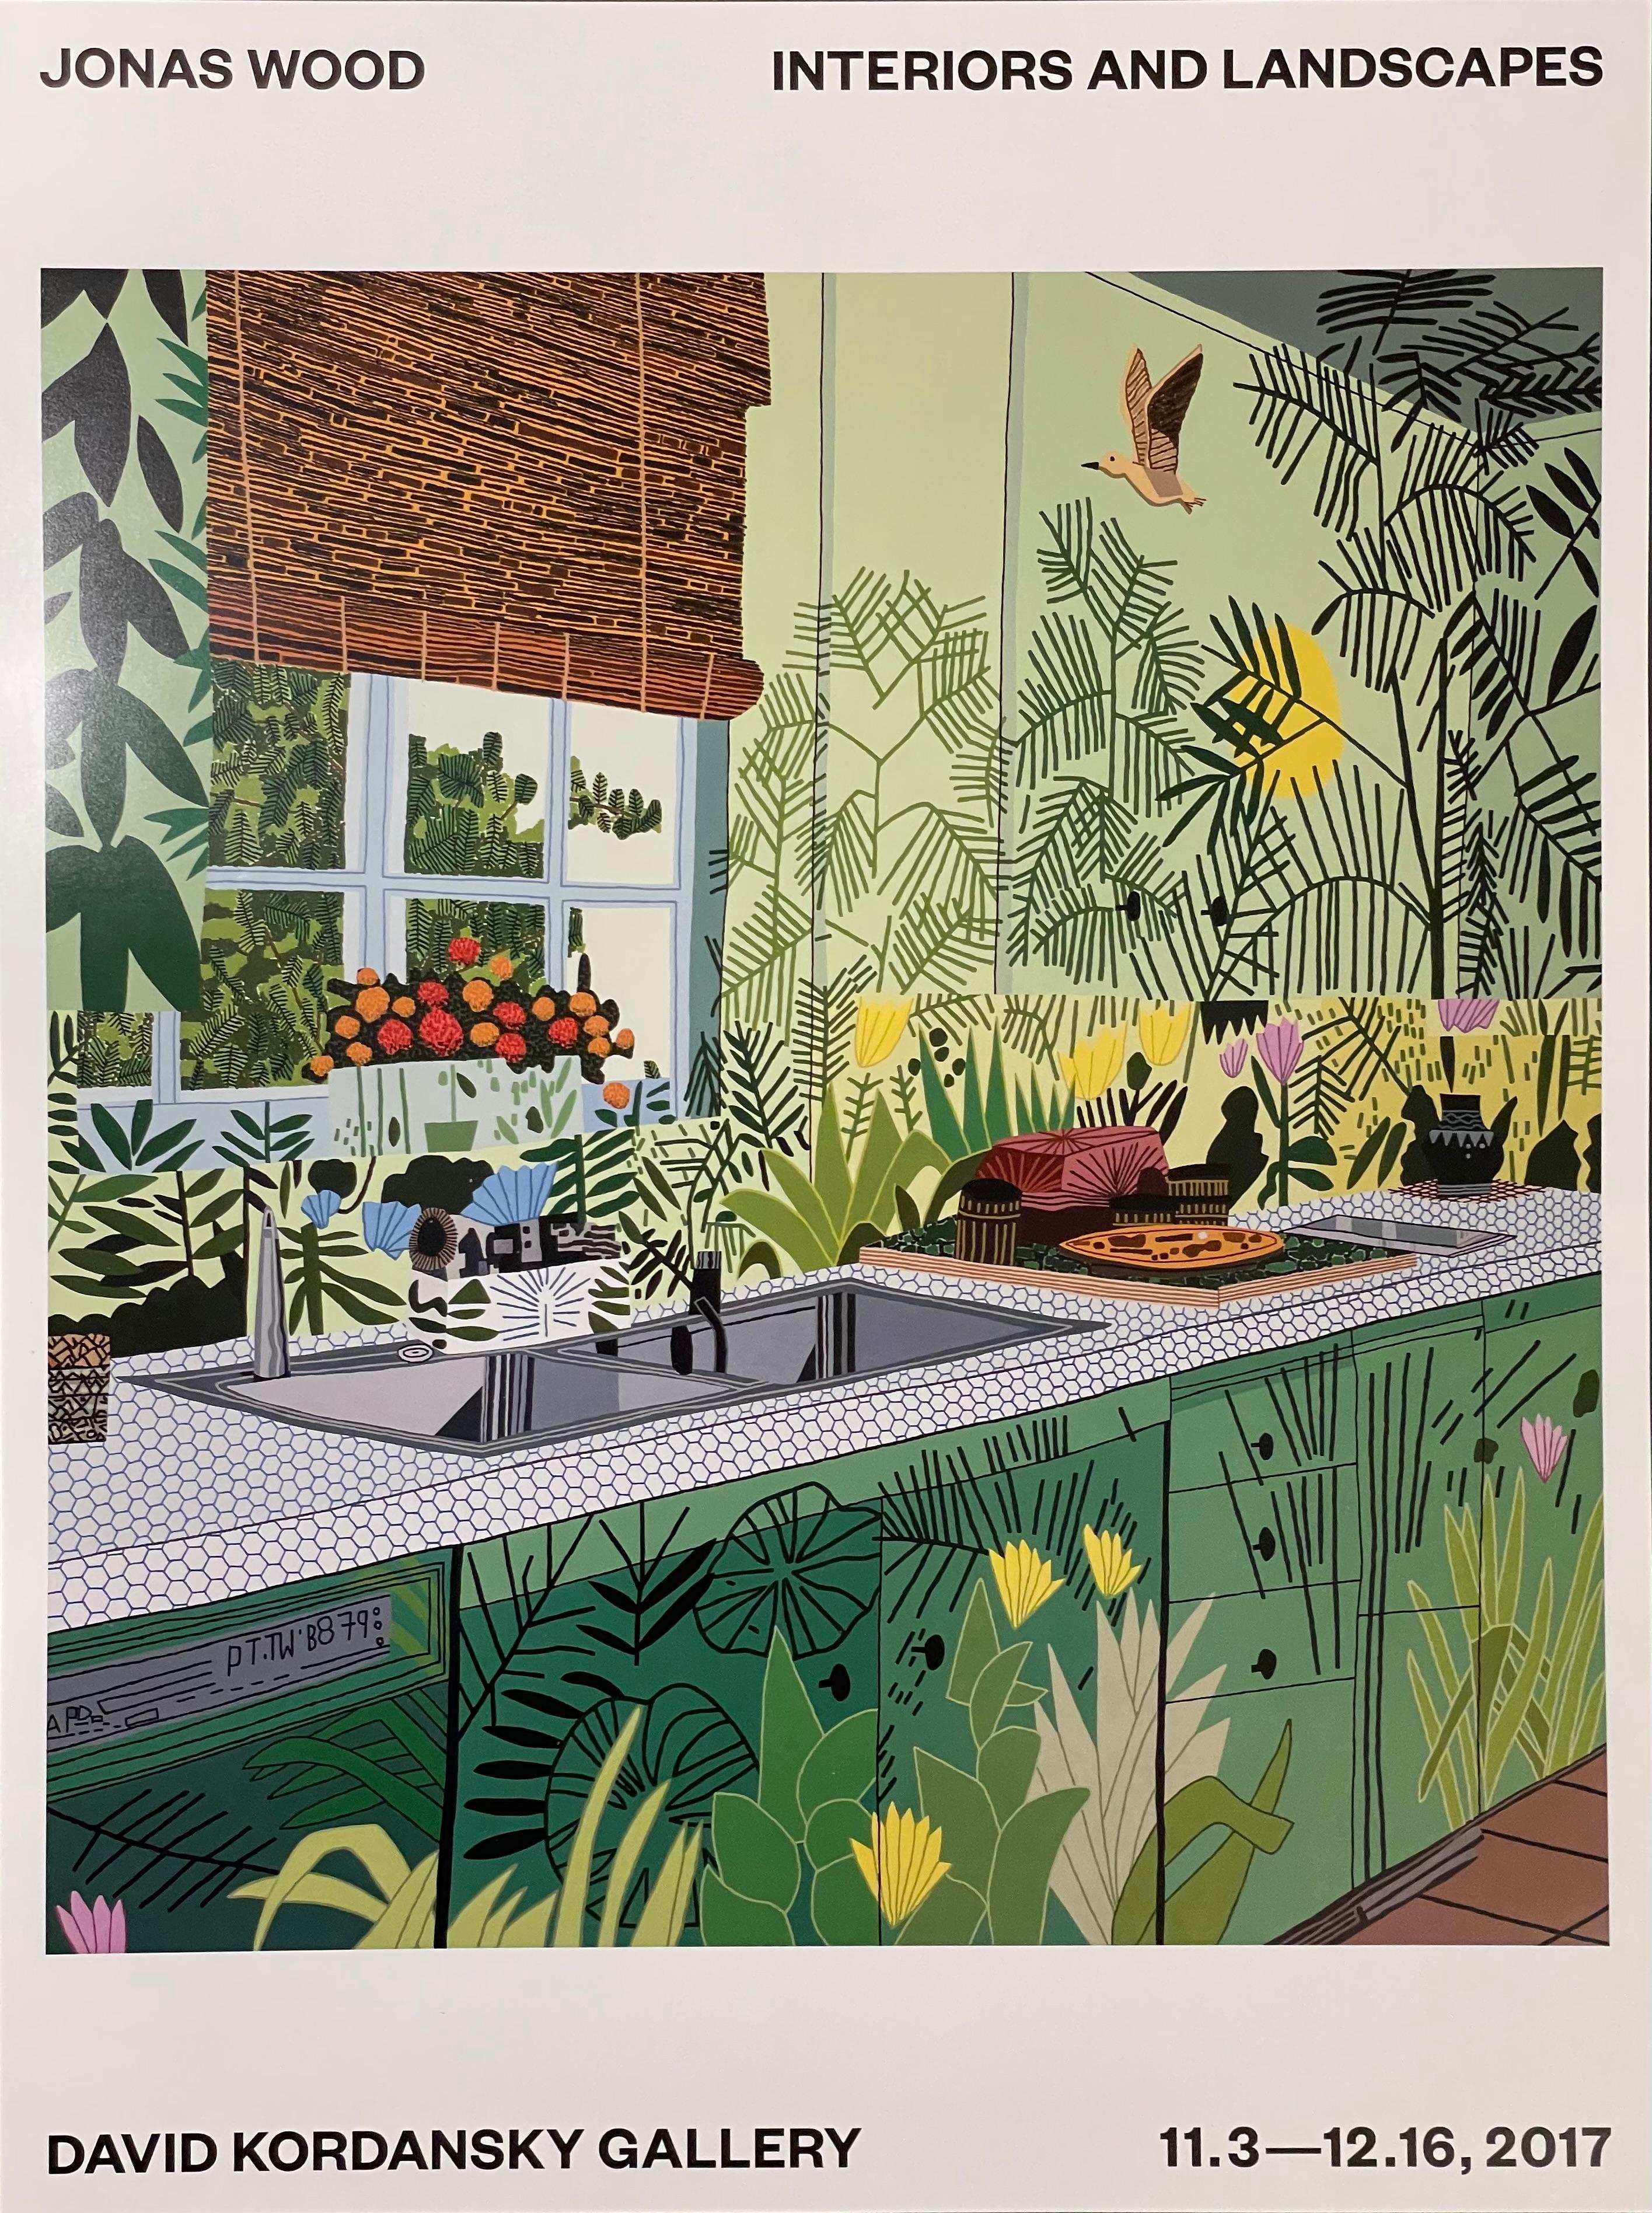 Nach Jonas Wood Jungle Küche, Ausstellungsplakat, Interieurs und Landschaften, Kordansky 